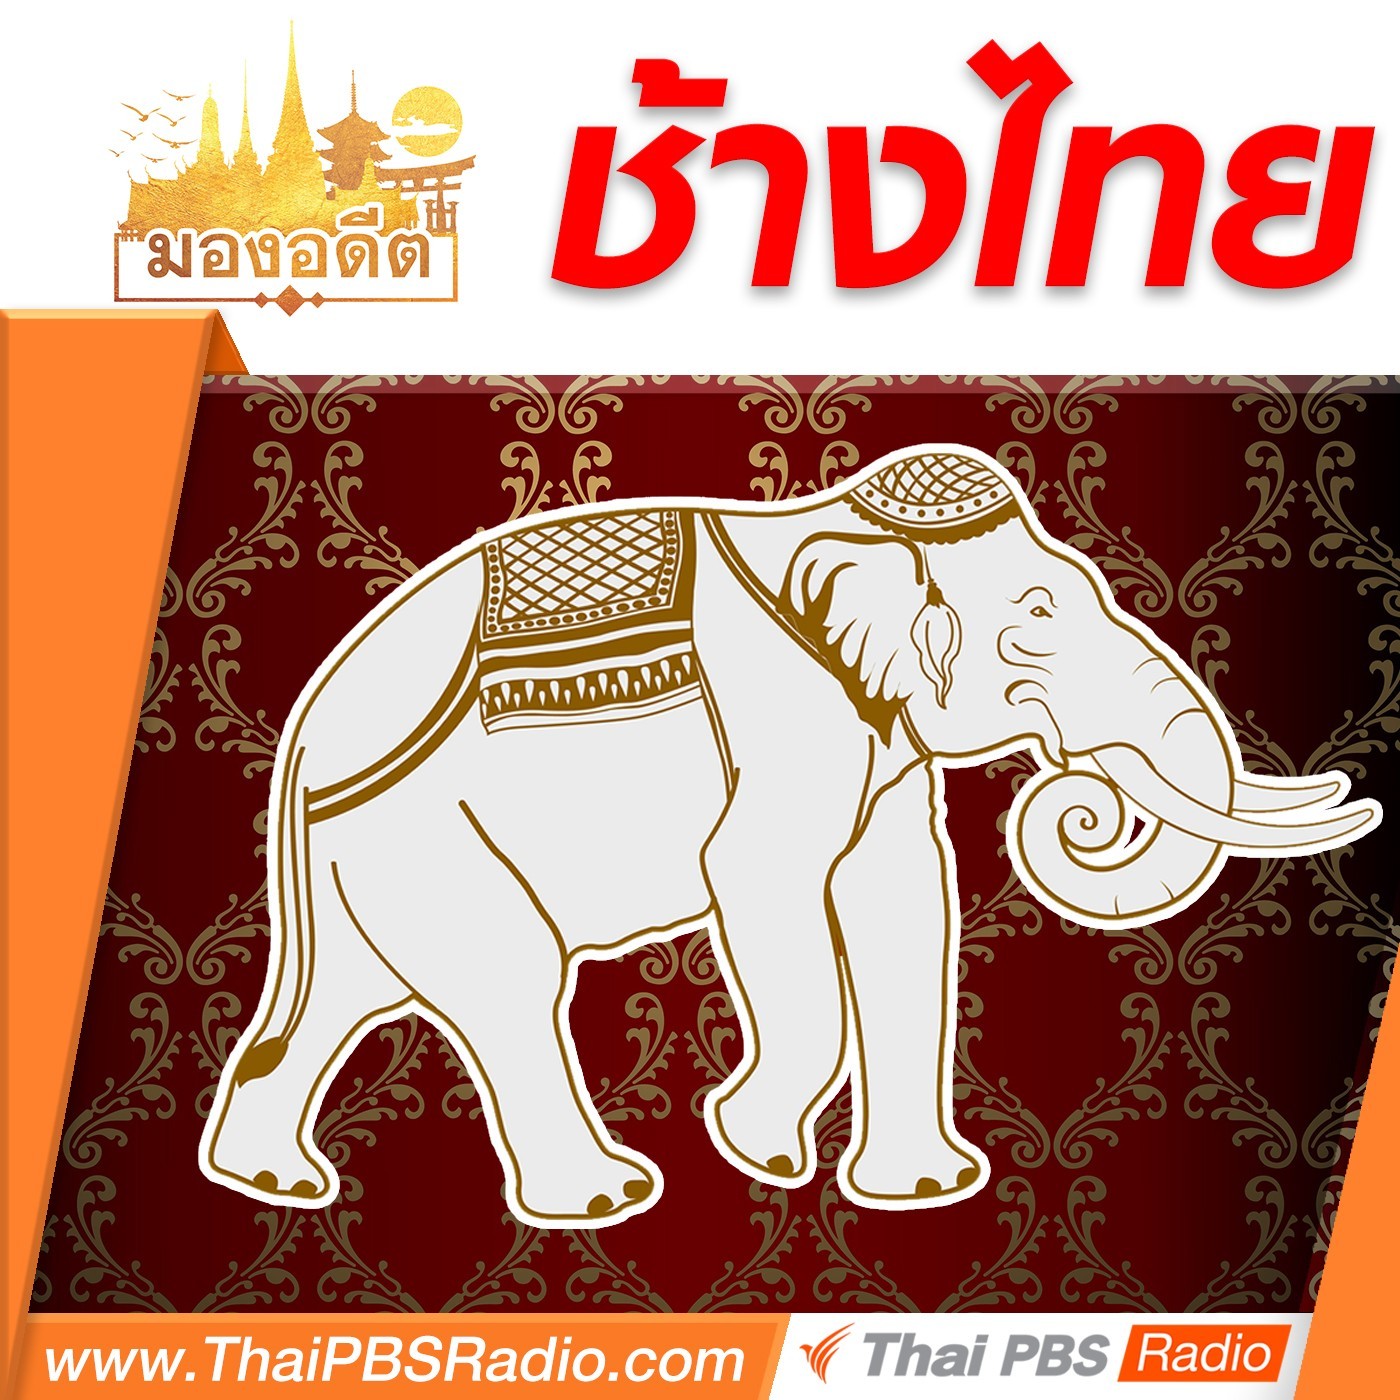 มองอดีต : ช้างไทย